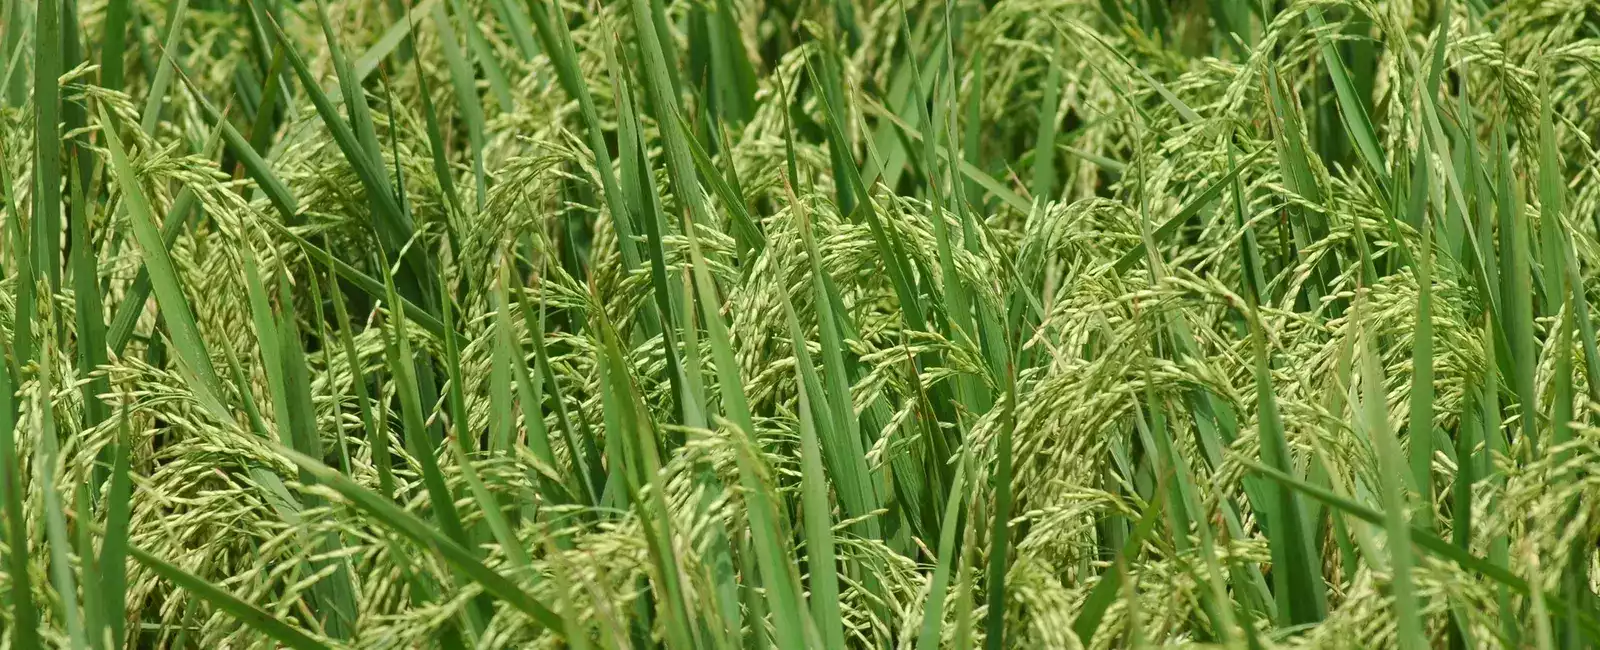 Plantas de arroz verde